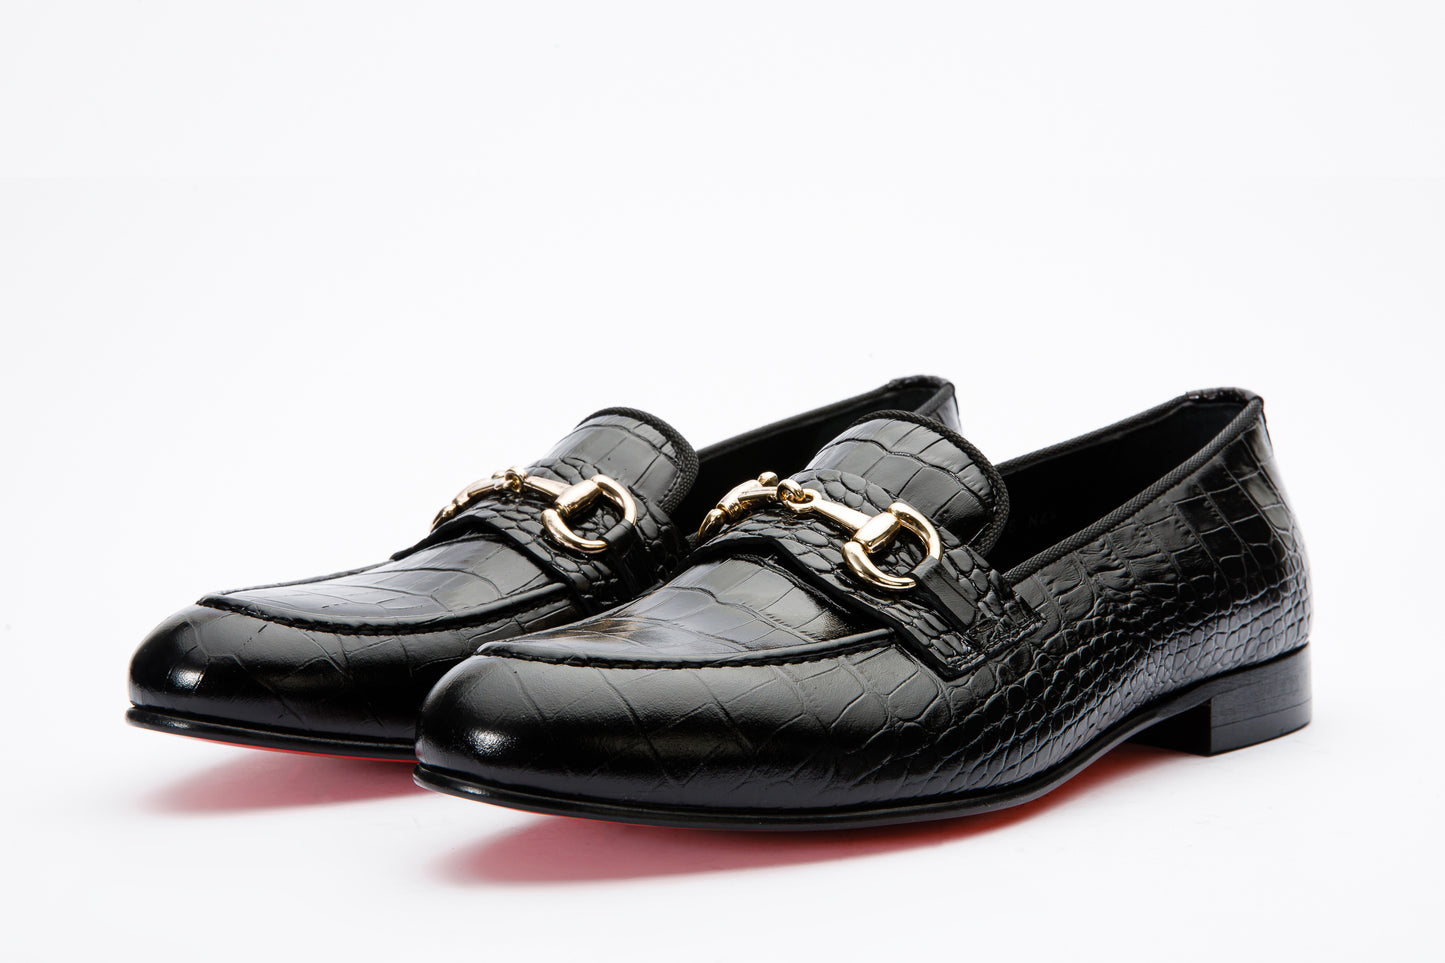 The Monaco Black Leather Men Shoe Bit Loafer – Vinci Leather Shoes